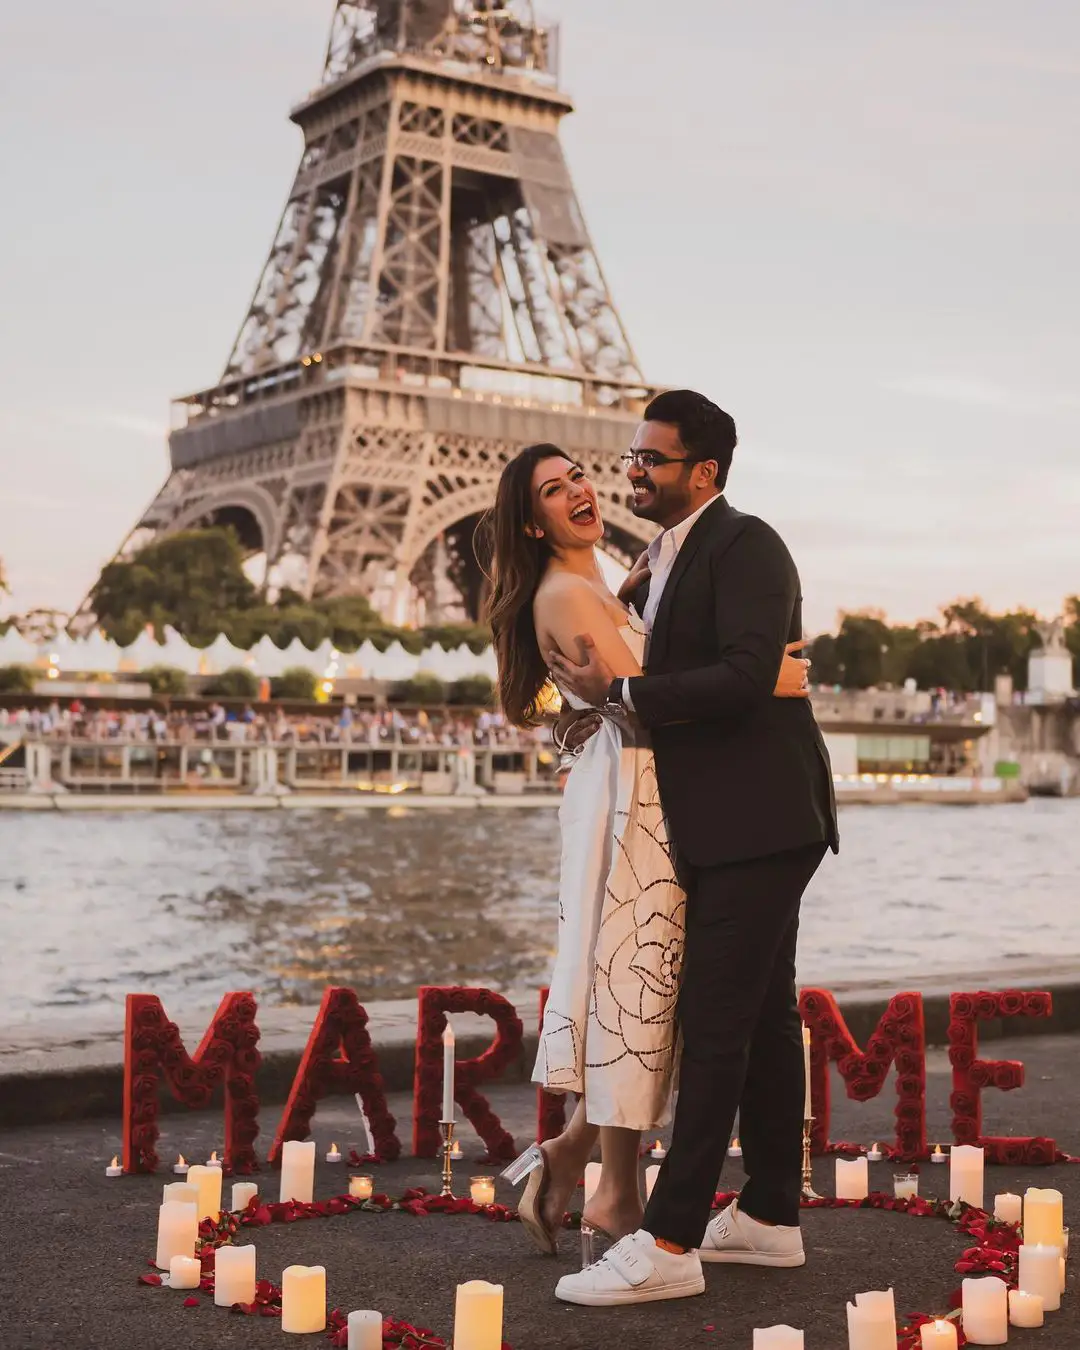 Hansika with her boyfriend at Eiffel tower